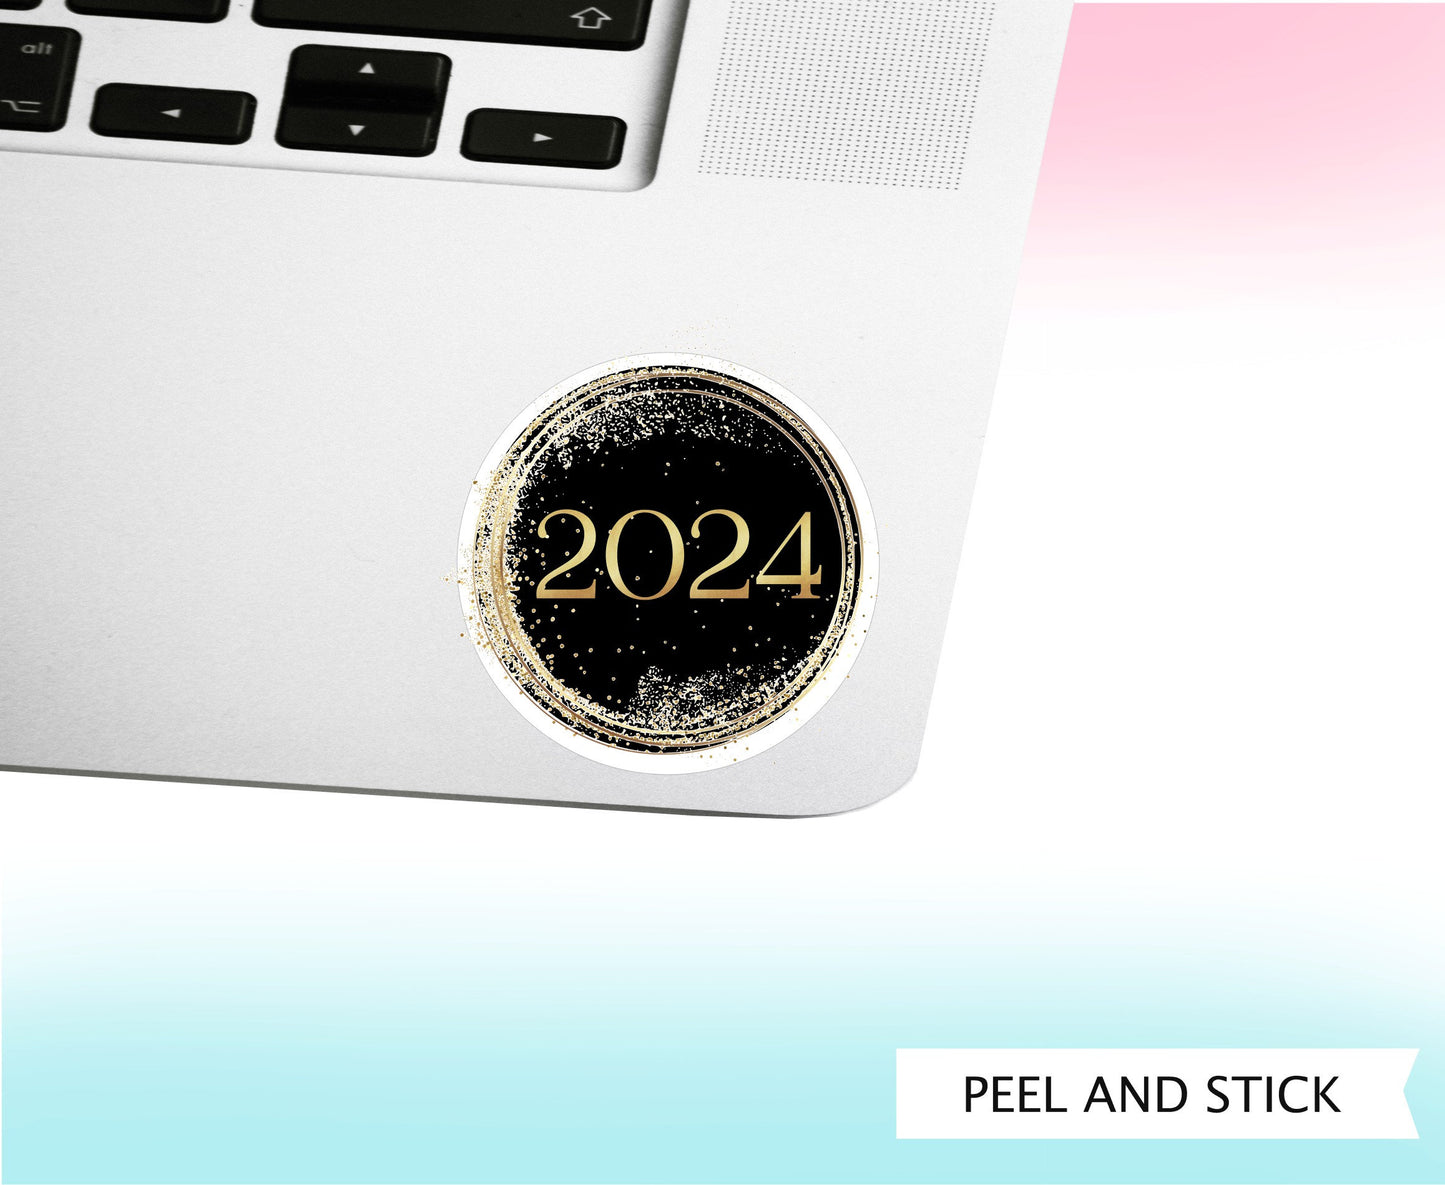 2024 CIRCLE STICKER || Vinyl Sticker Decal